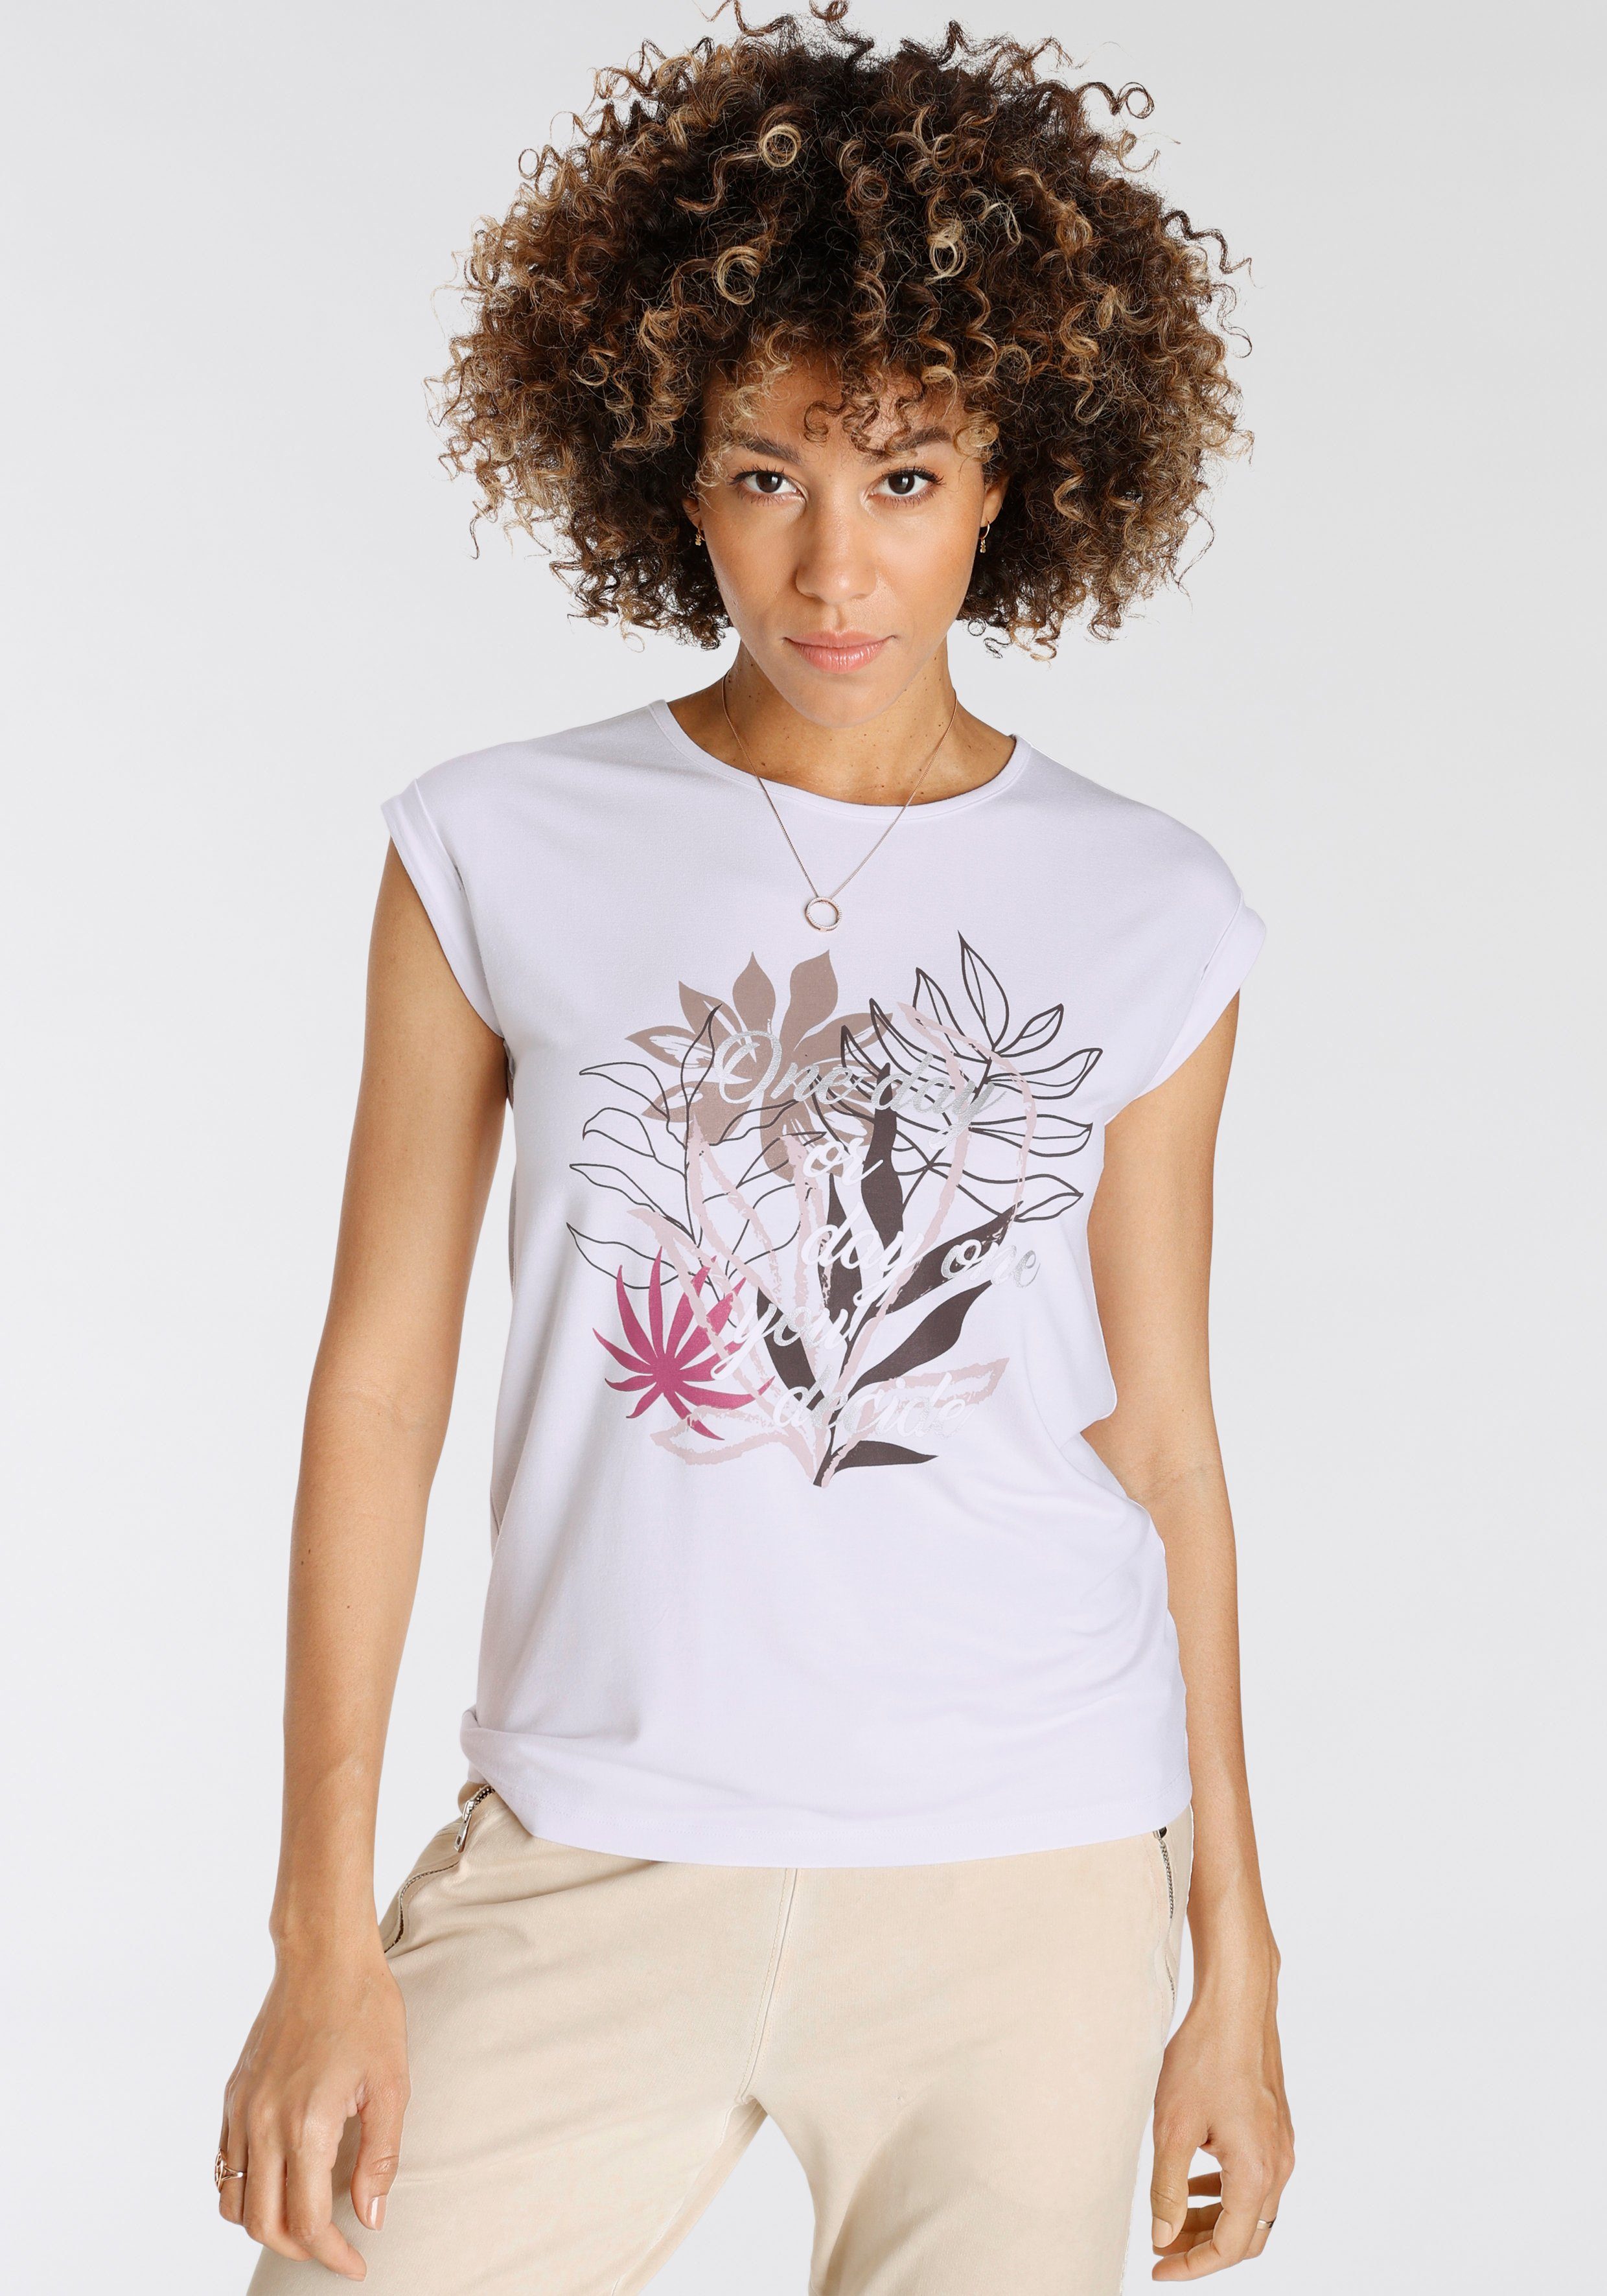 Boysen's Print-Shirt mit tollem Floral-Druck mit Schriftzug - NEUE KOLLEKTION